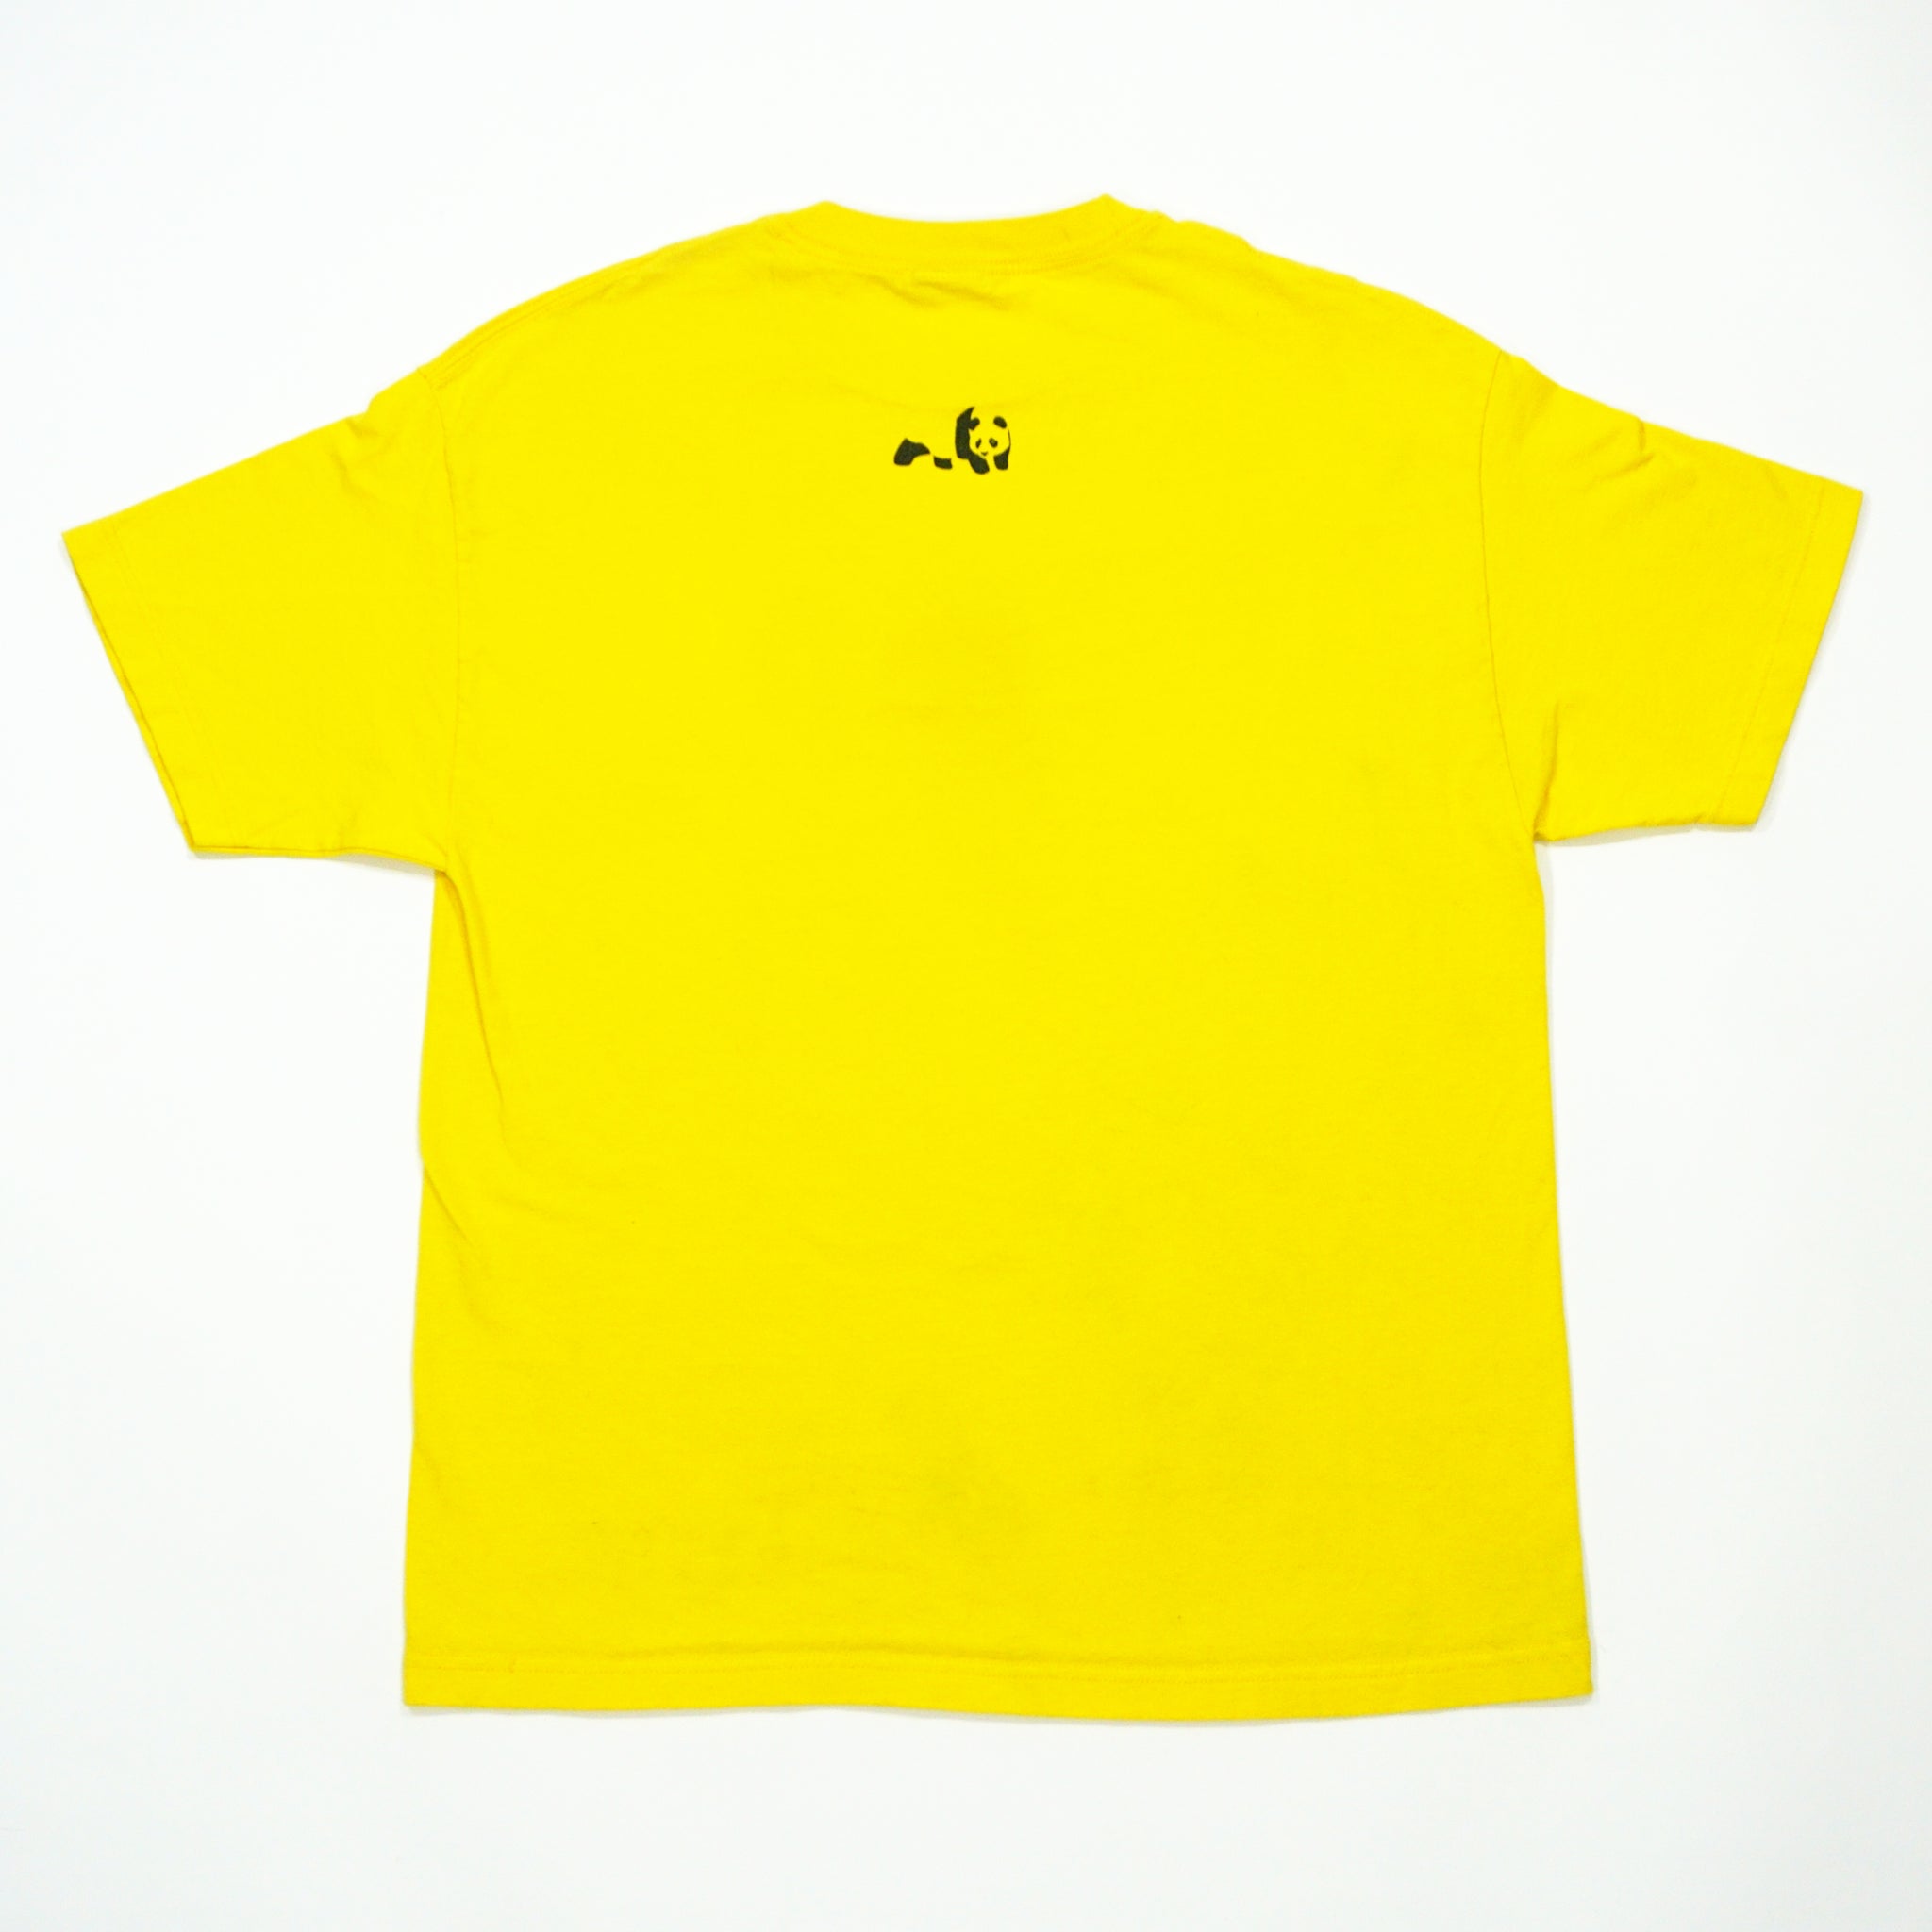 Enjoi - Criddler Shirt (XL)